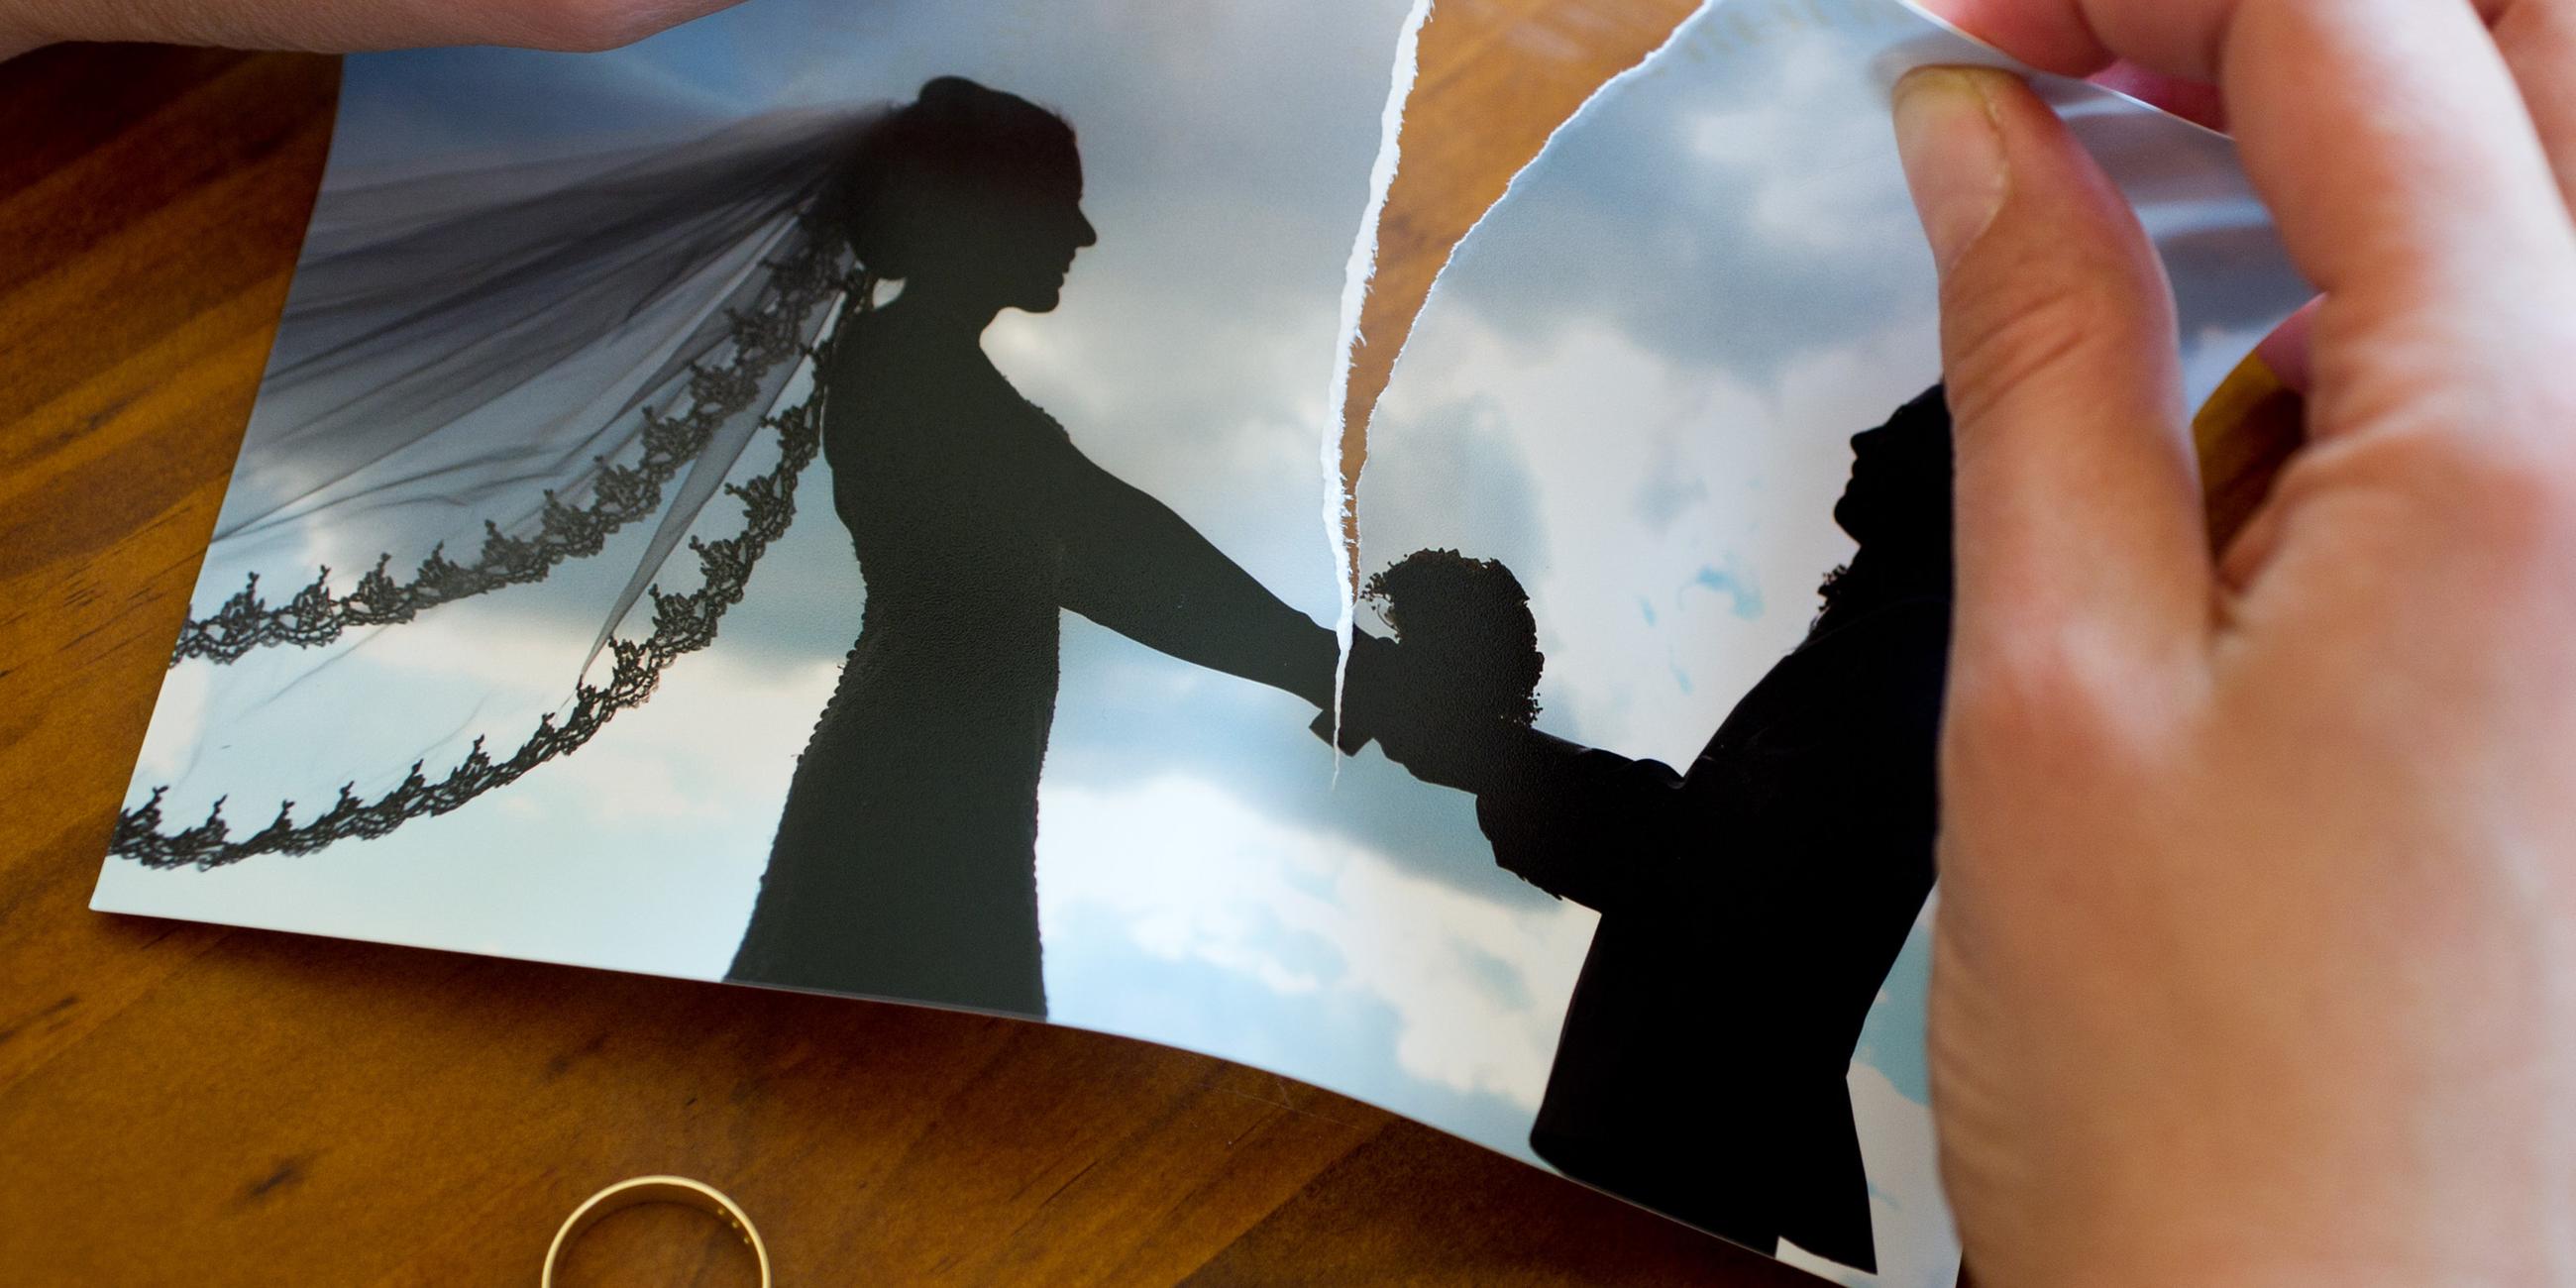 Hände zereißen ein Hochzeitsfoto, unter dem Foto liegt ein Ehering.